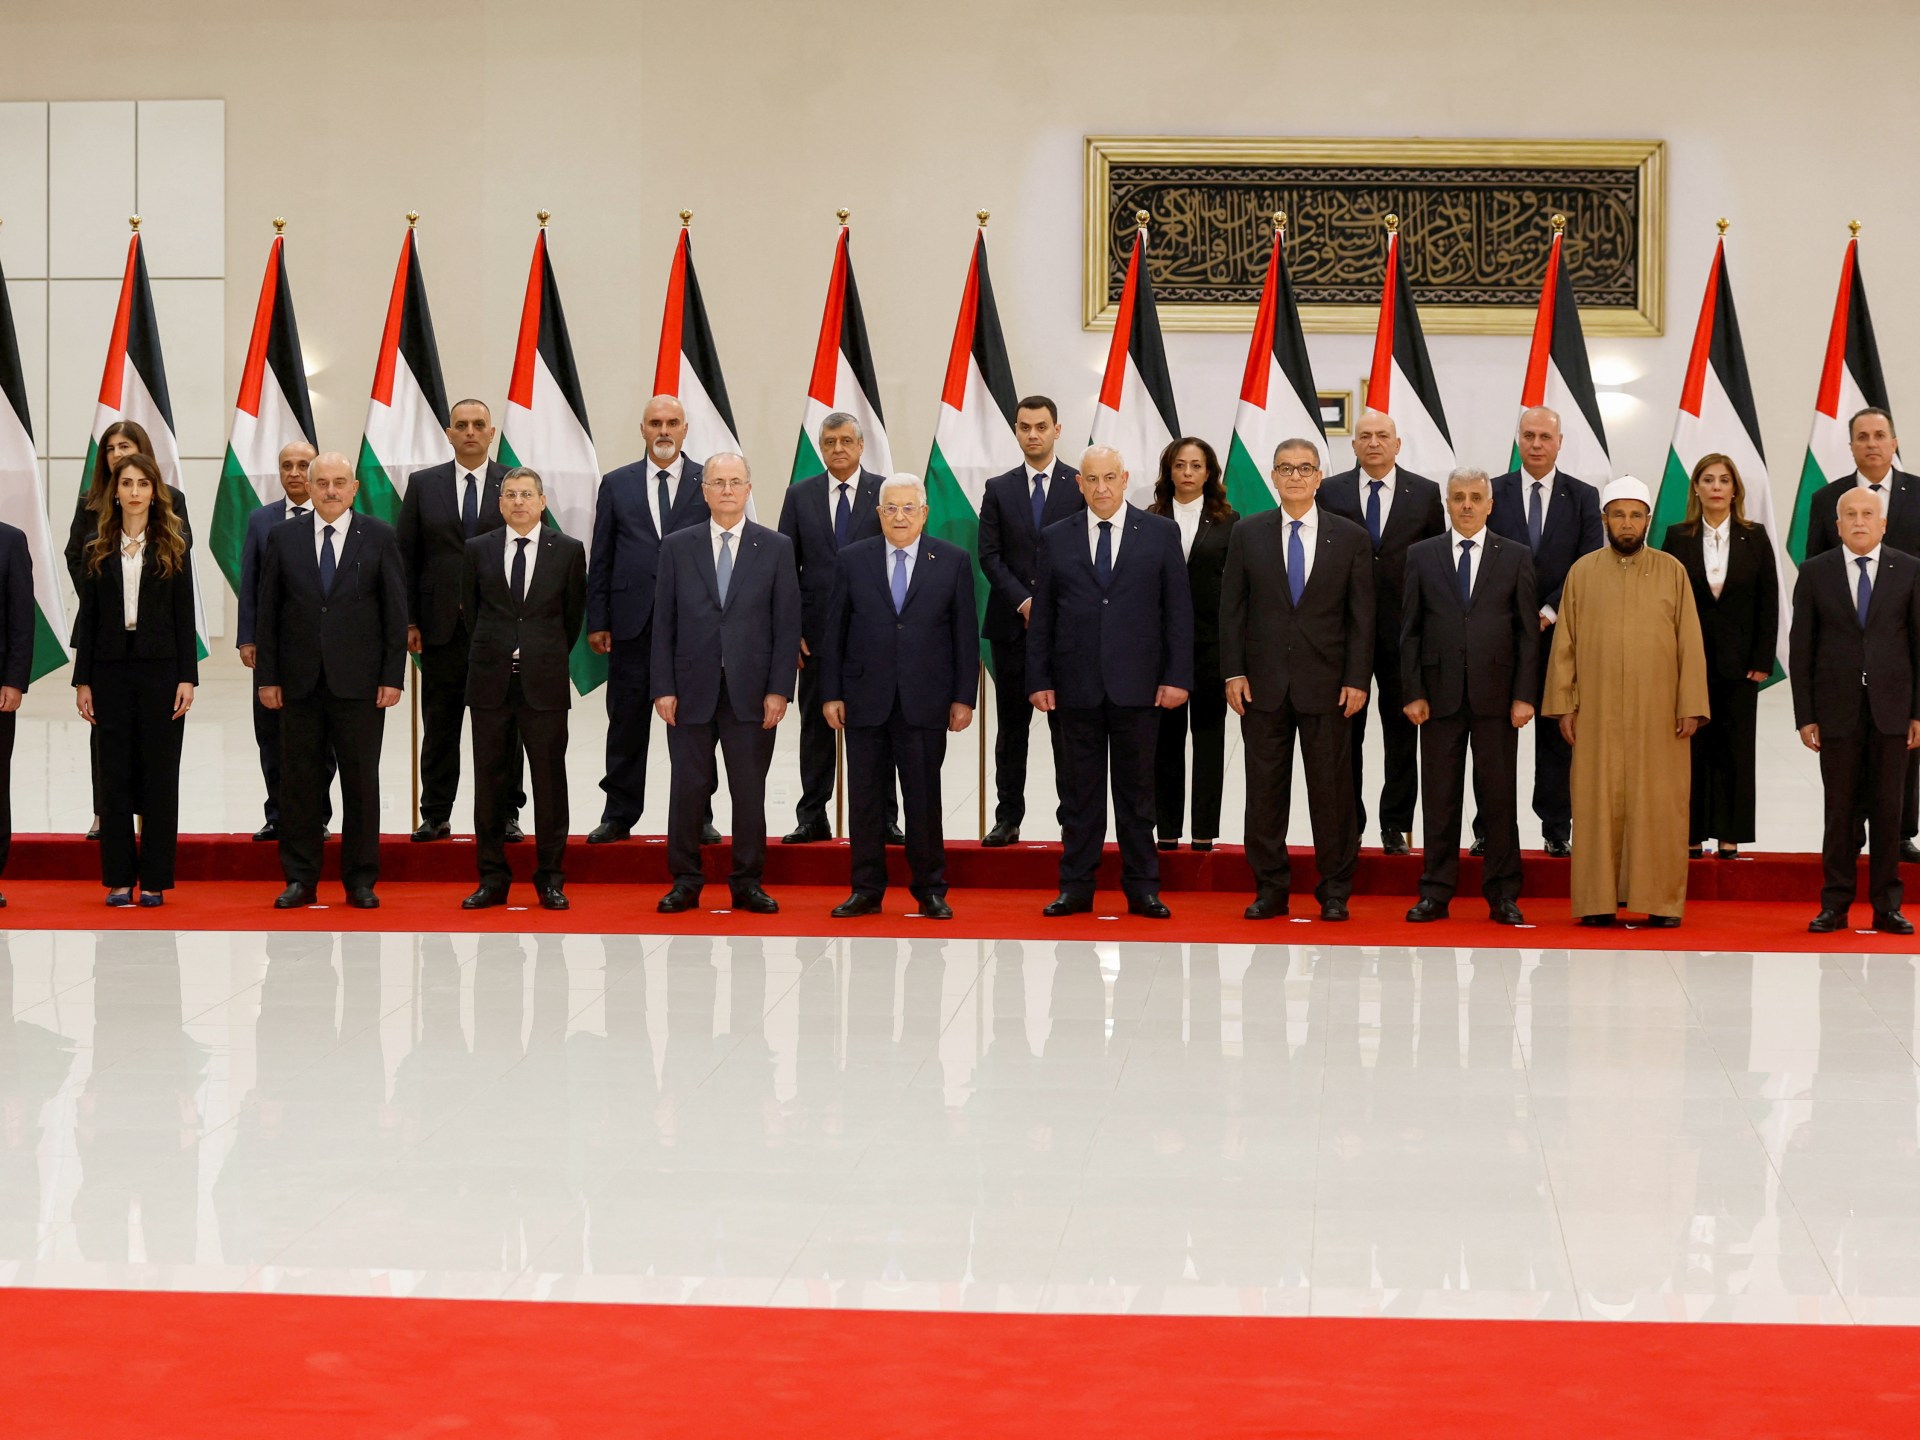 الحكومة الفلسطينية الجديدة تؤدي اليمين الدستورية | أخبار – البوكس نيوز